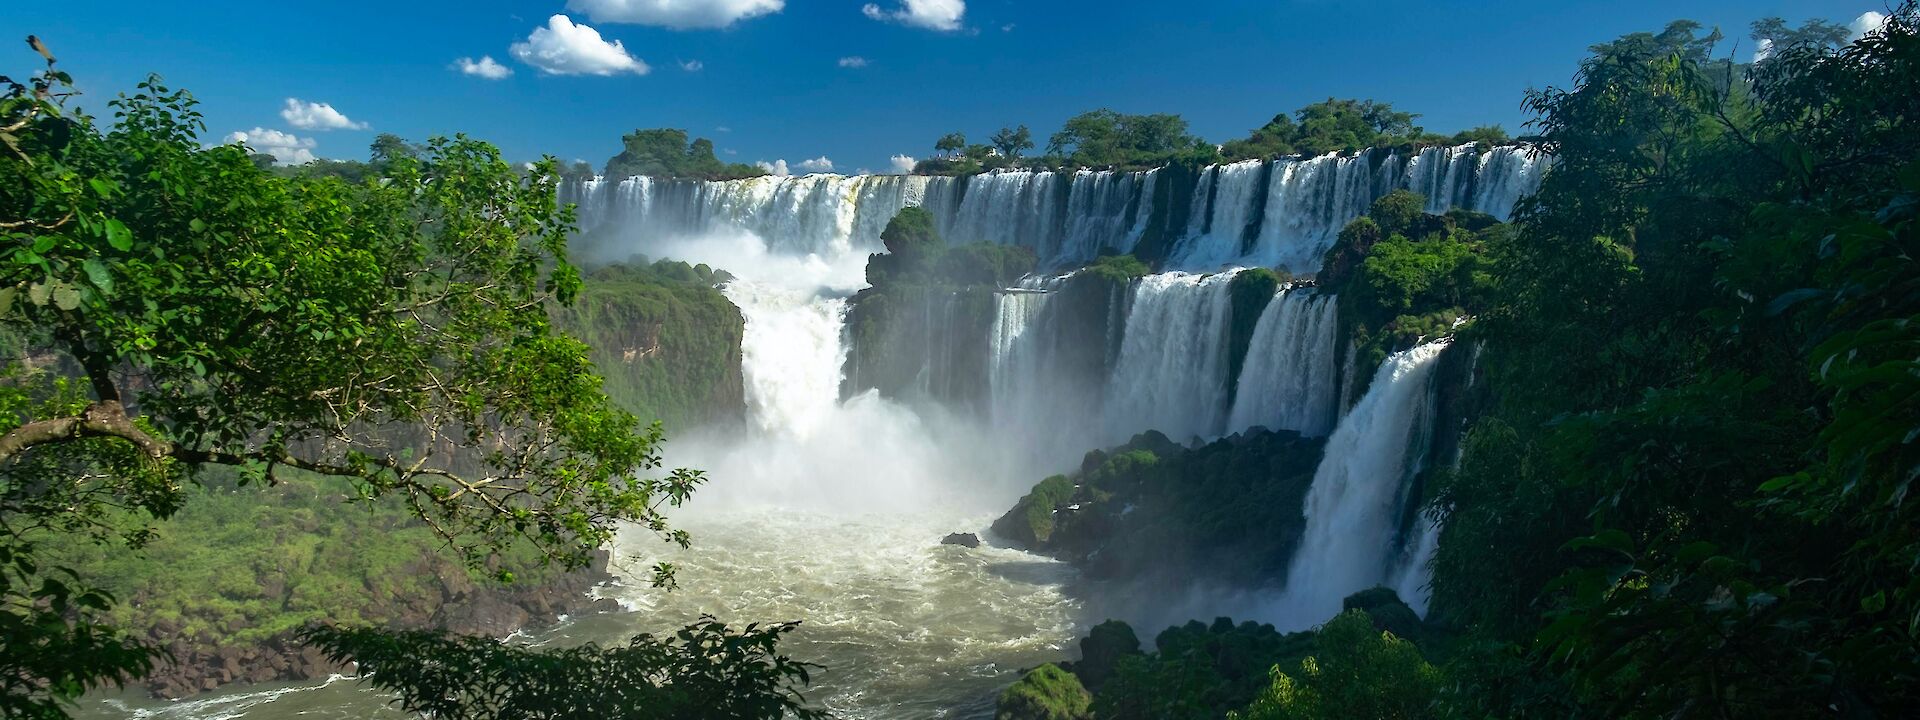 Iguazu Falls, Argentina. Derek Oyen@Unsplash